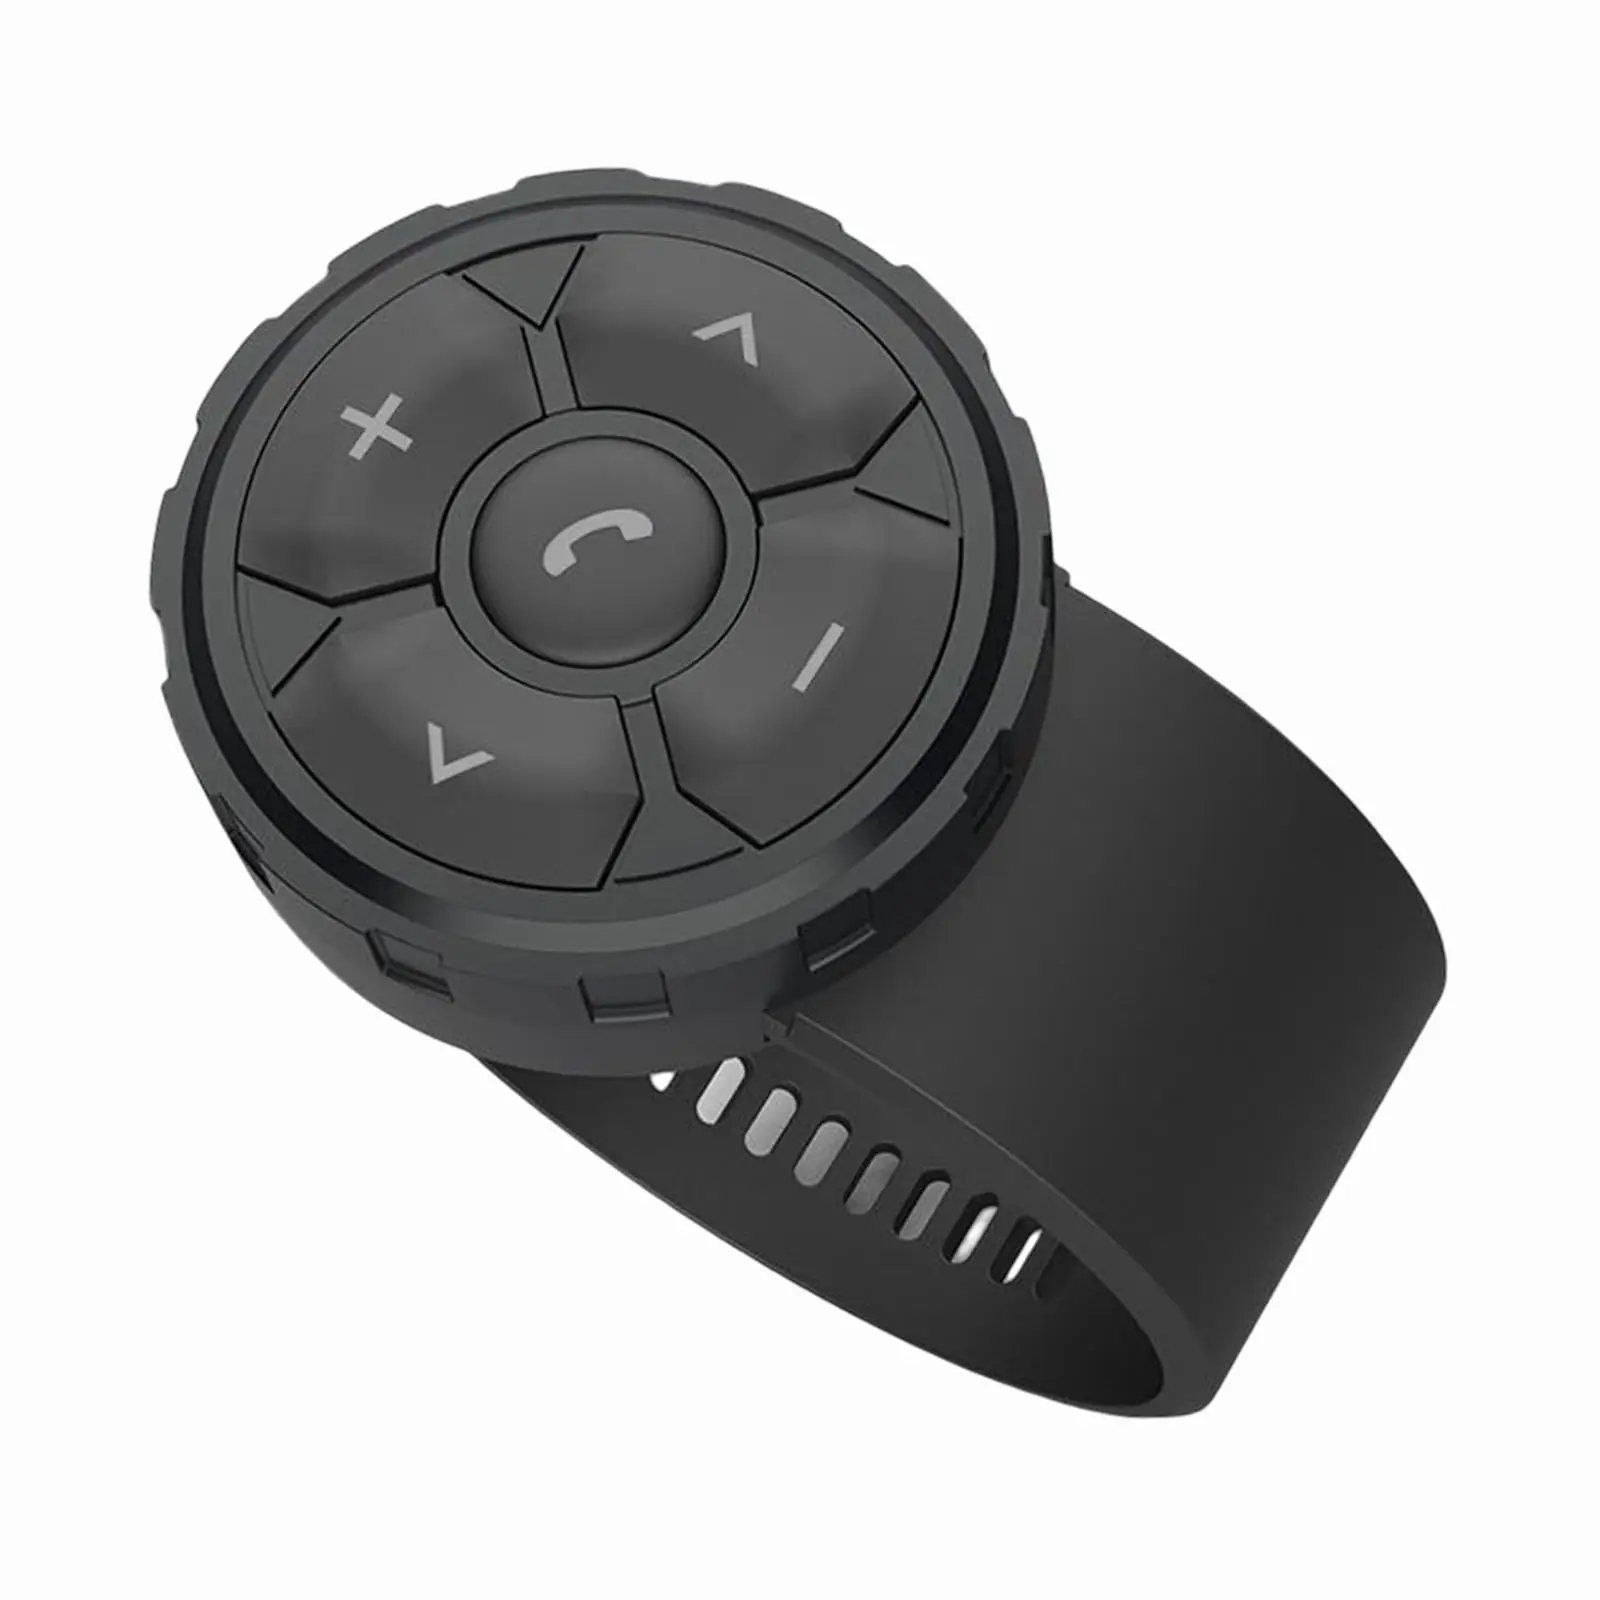 Steering Wheel Remote Control Multipurpose Handsfree Universal for Bike Motorcycle Phone